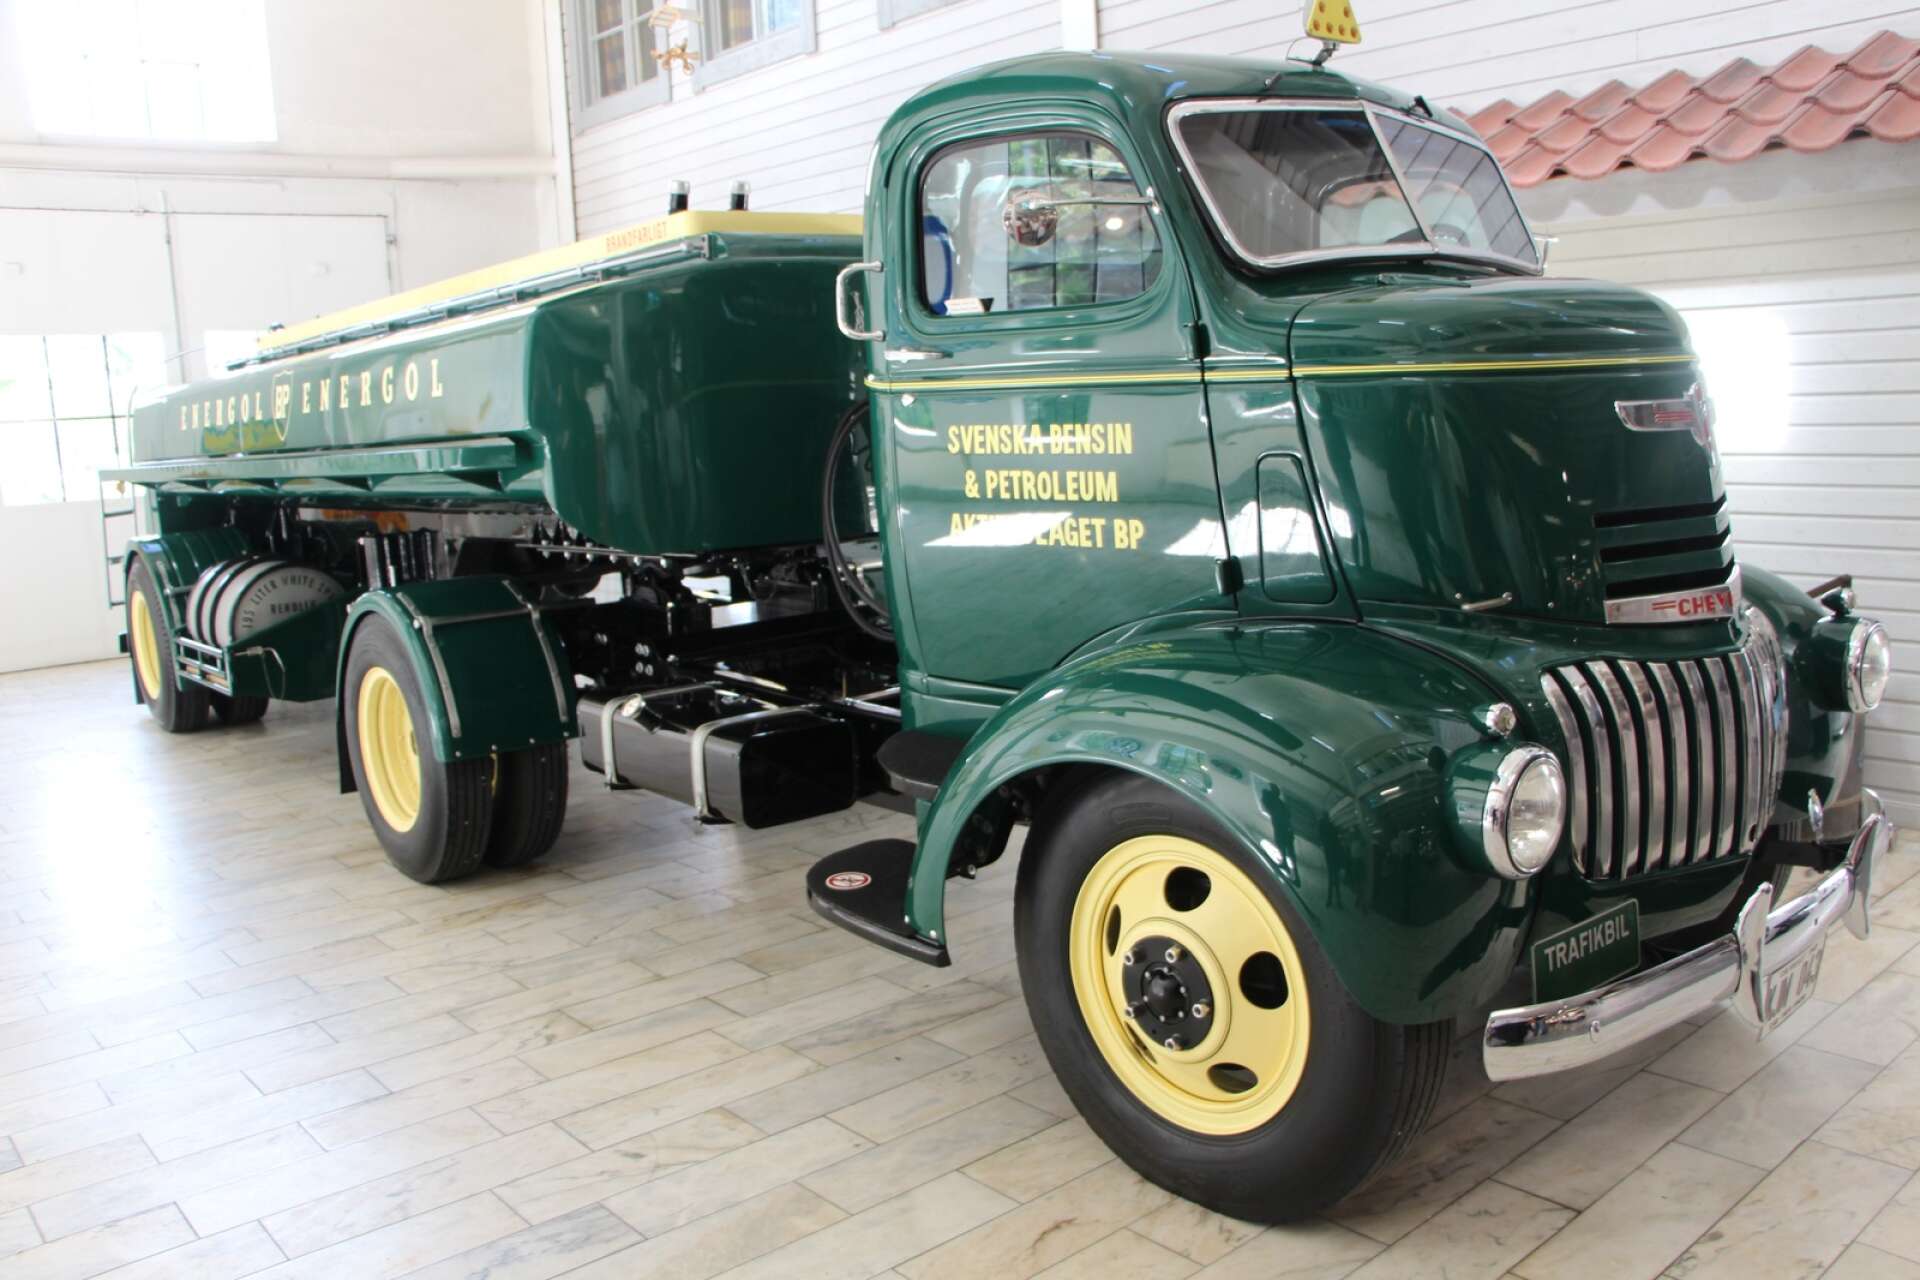 Den här vackra tankbilen, en Chevrolet från 1942, kan man studera på museet.